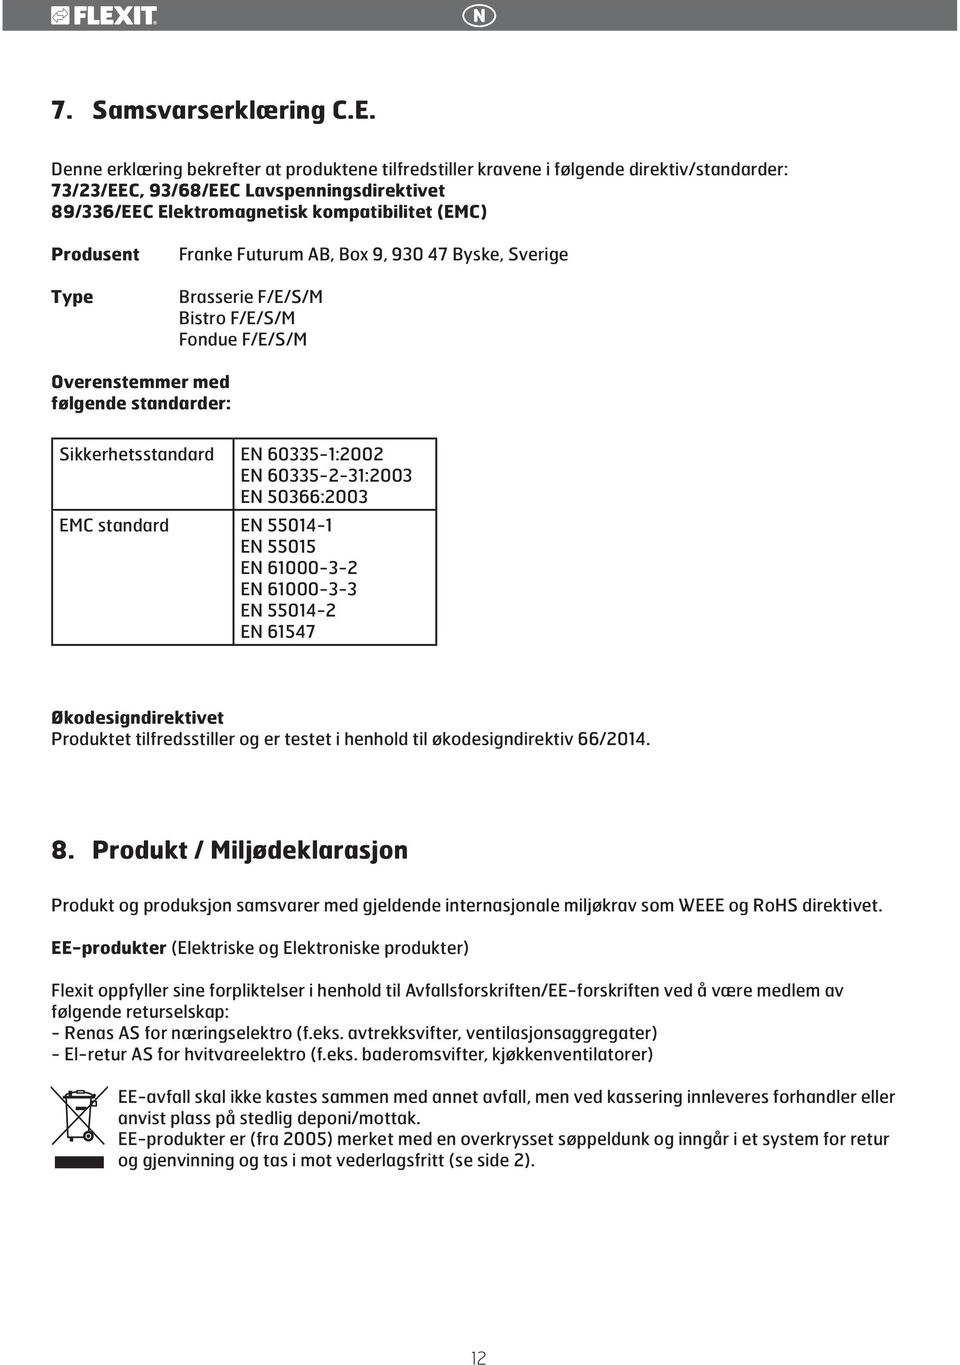 Type Franke Futurum AB, Box 9, 930 47 Byske, Sverige Brasserie F/E/S/M Bistro F/E/S/M Fondue F/E/S/M Overenstemmer med følgende standarder: Sikkerhetsstandard EN 60335-1:2002 EN 60335-2-31:2003 EN